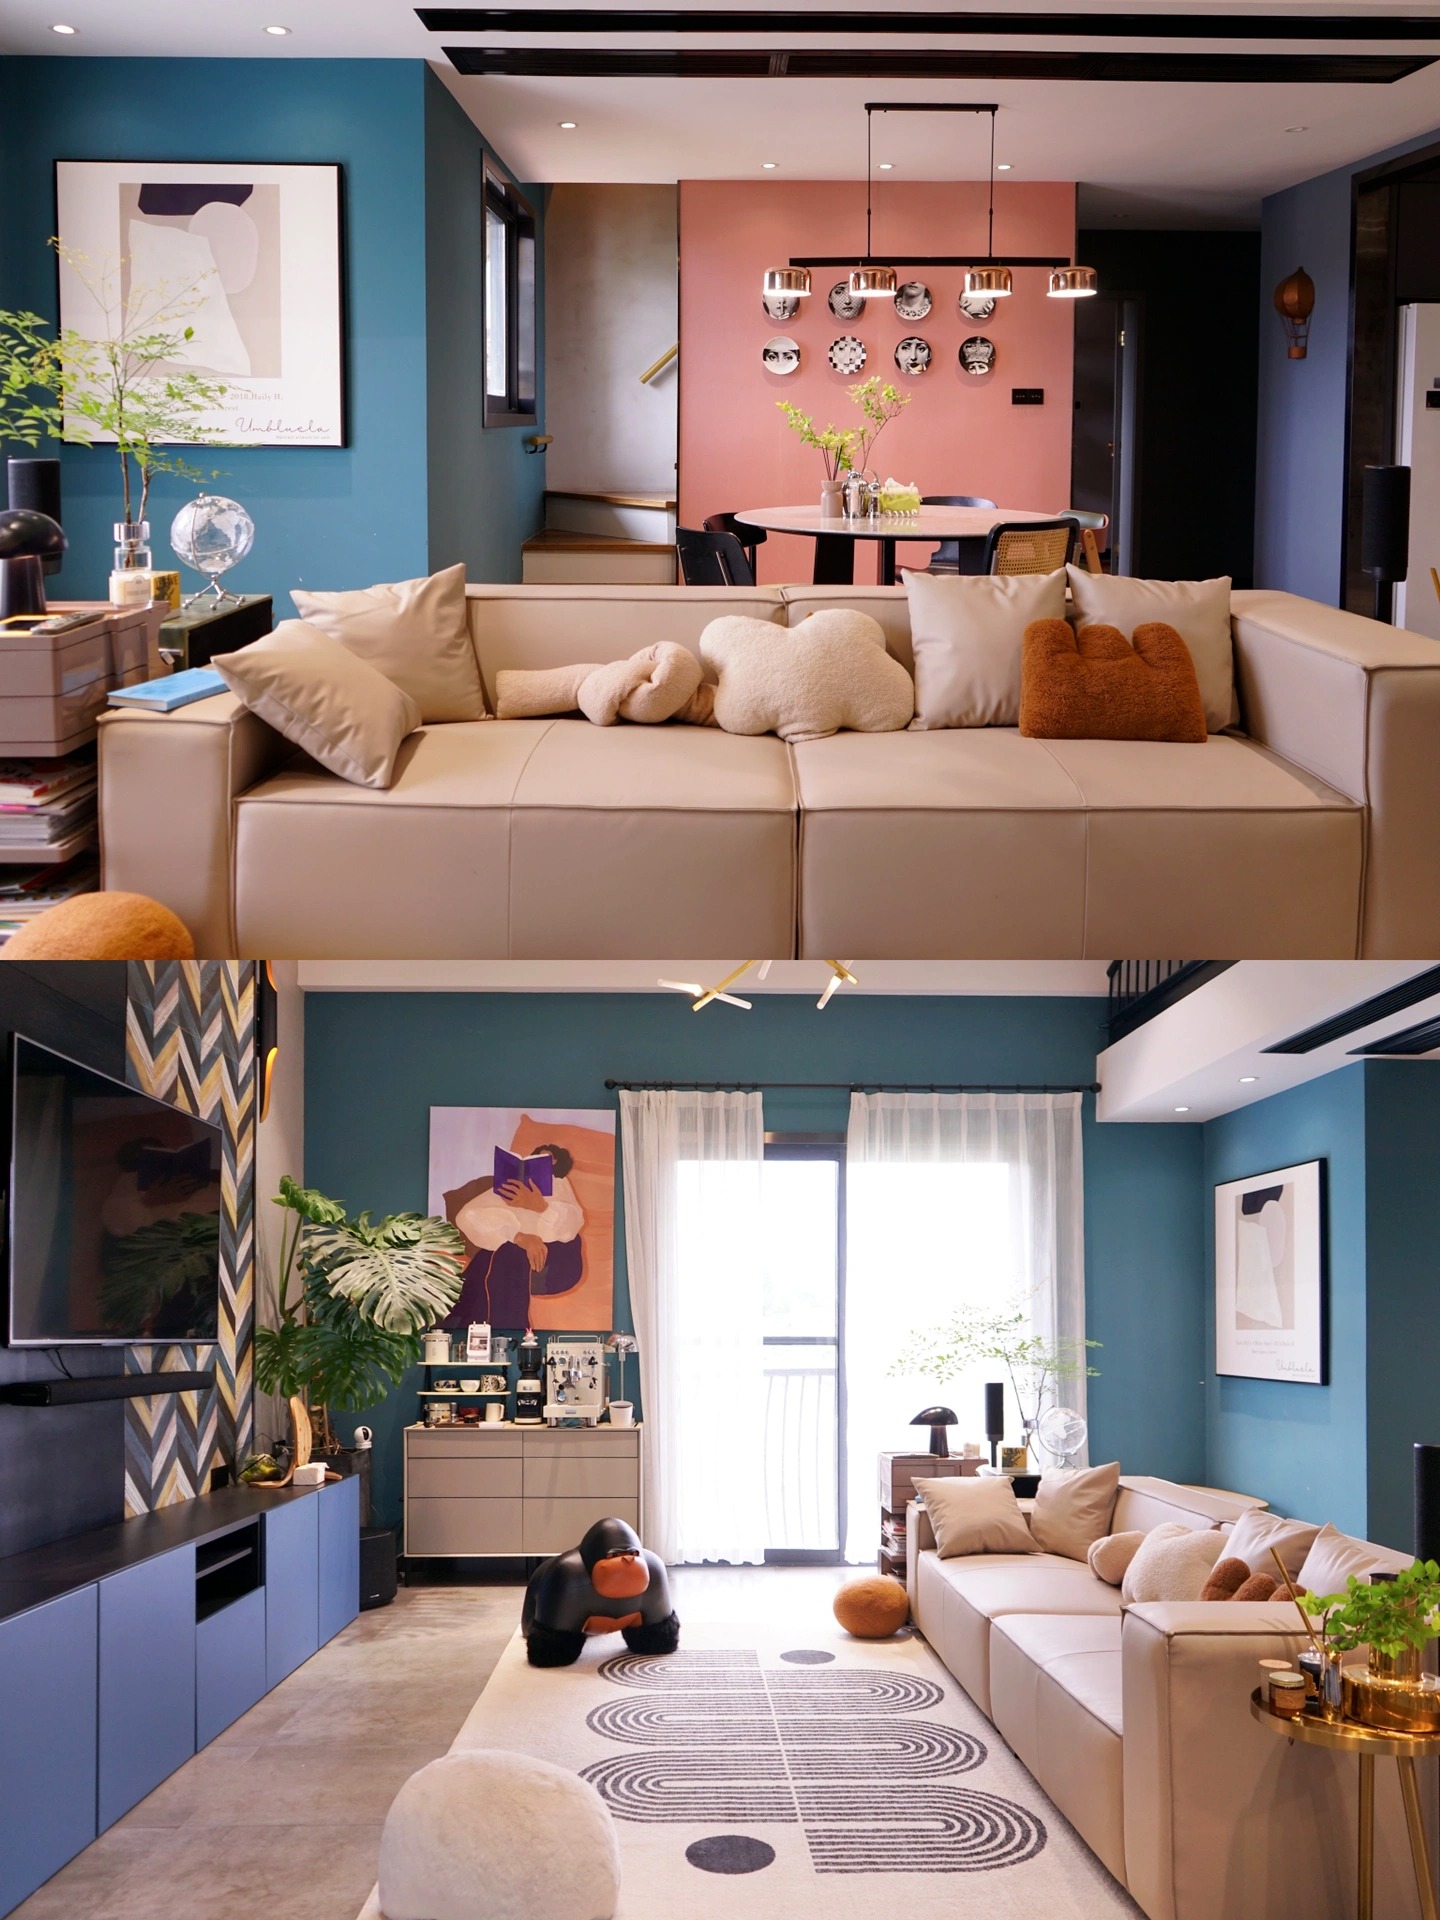 Căn nhà vợ chồng trẻ tự tay thiết kế: Phòng khách như triển lãm tranh, không ai muốn ra khỏi nhà